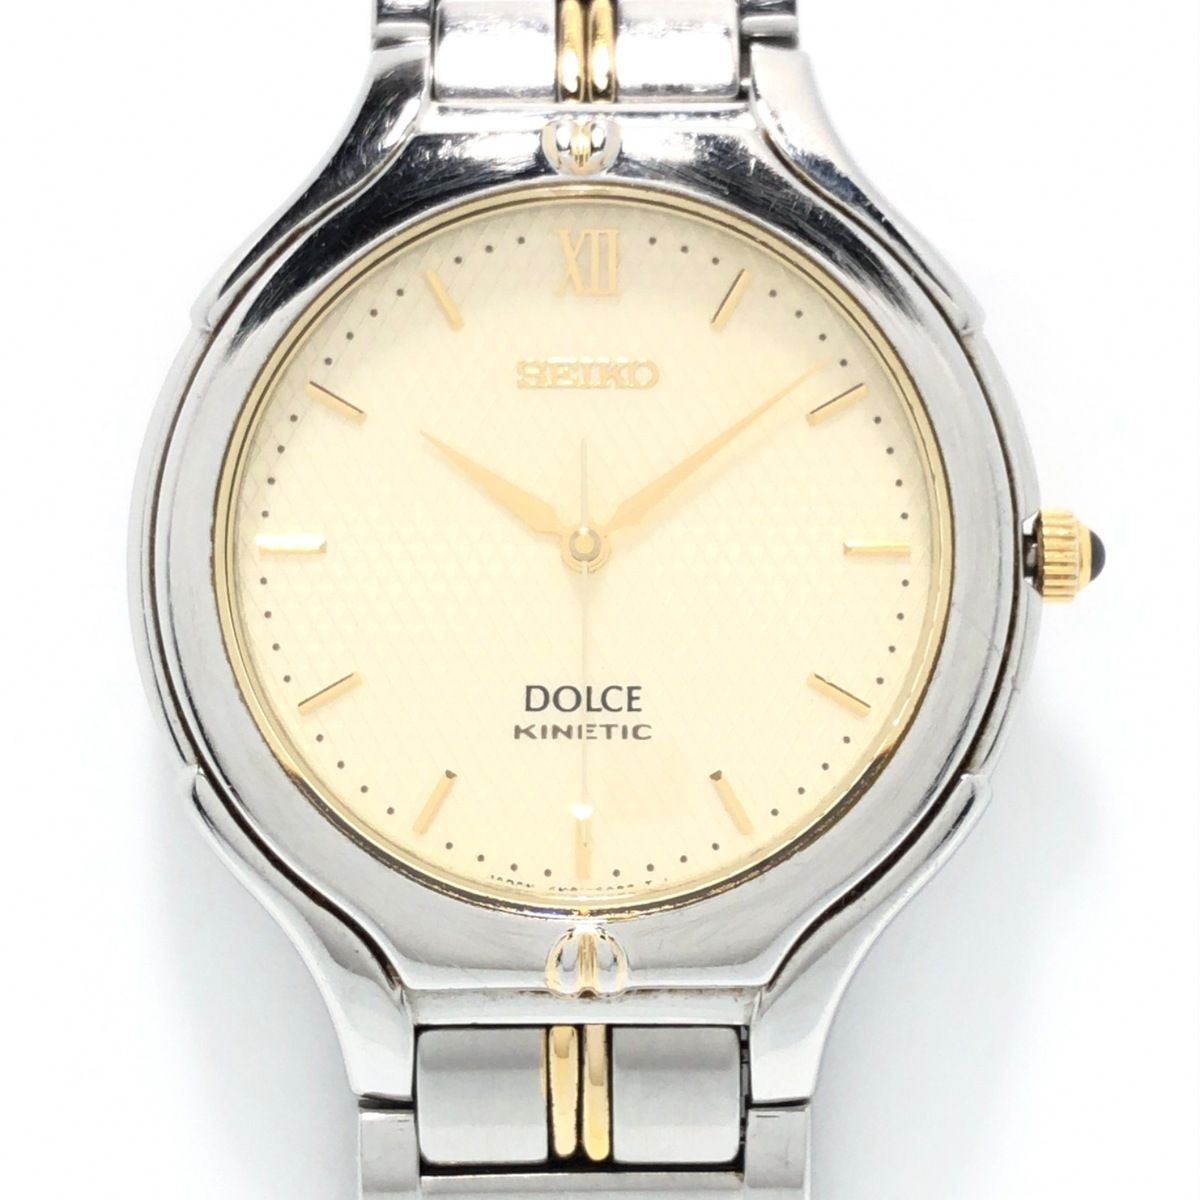 SEIKO(セイコー) 腕時計 DOLCE(ドルチェ) 4M61-0A40 レディース ...